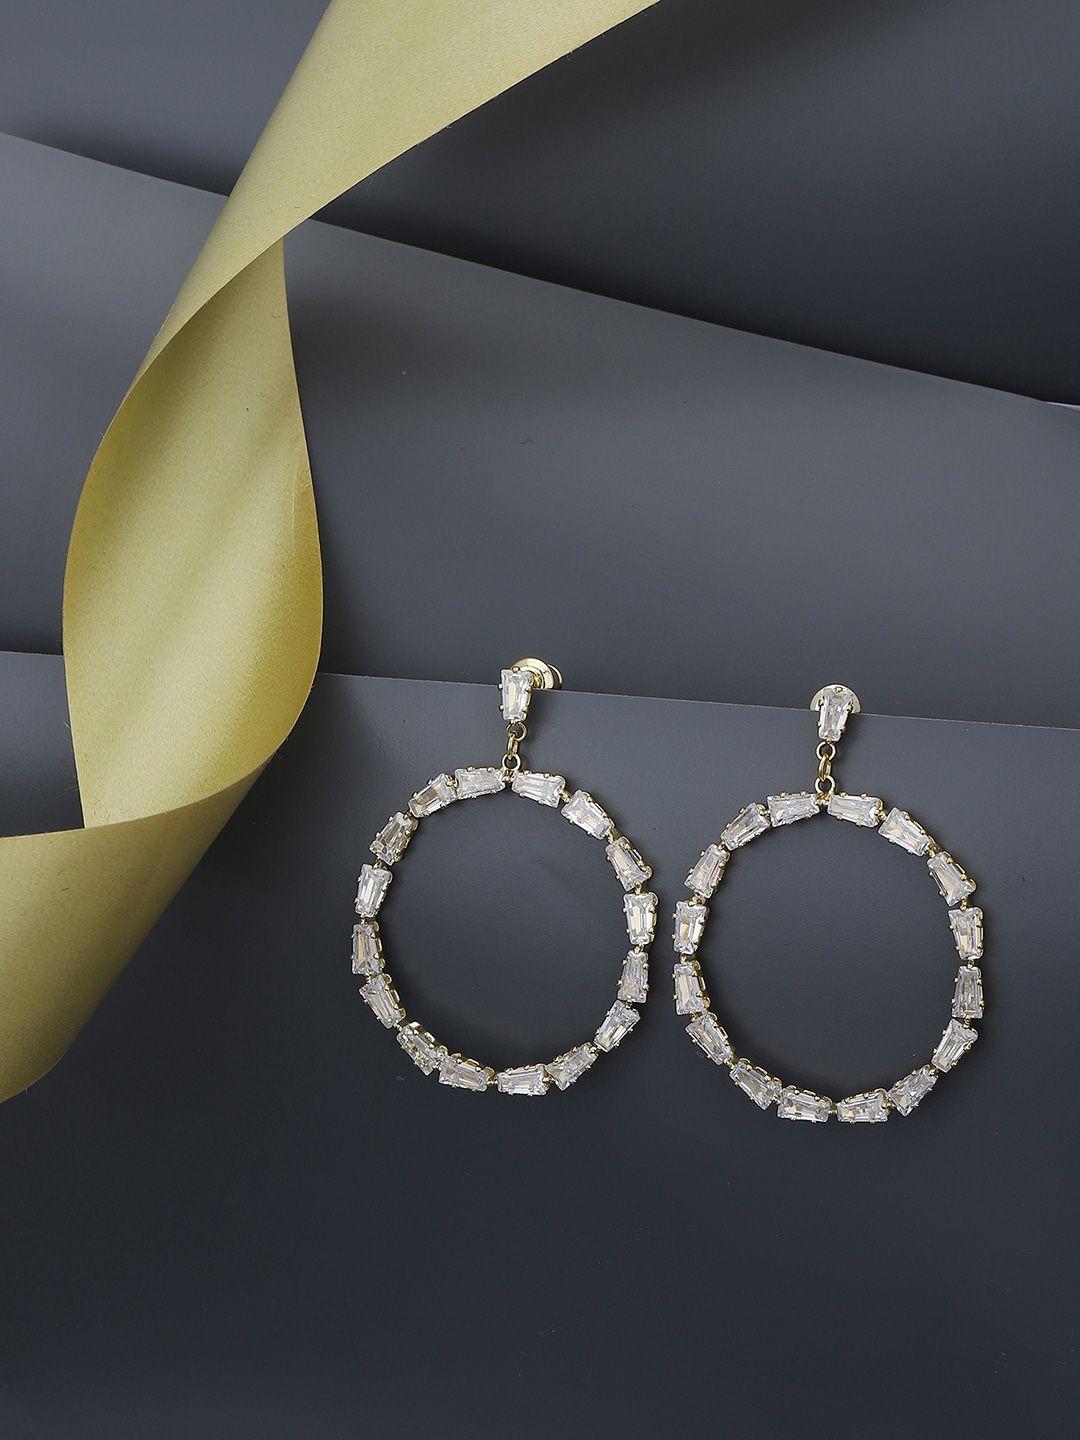 carlton london gold-plated circular drop earrings